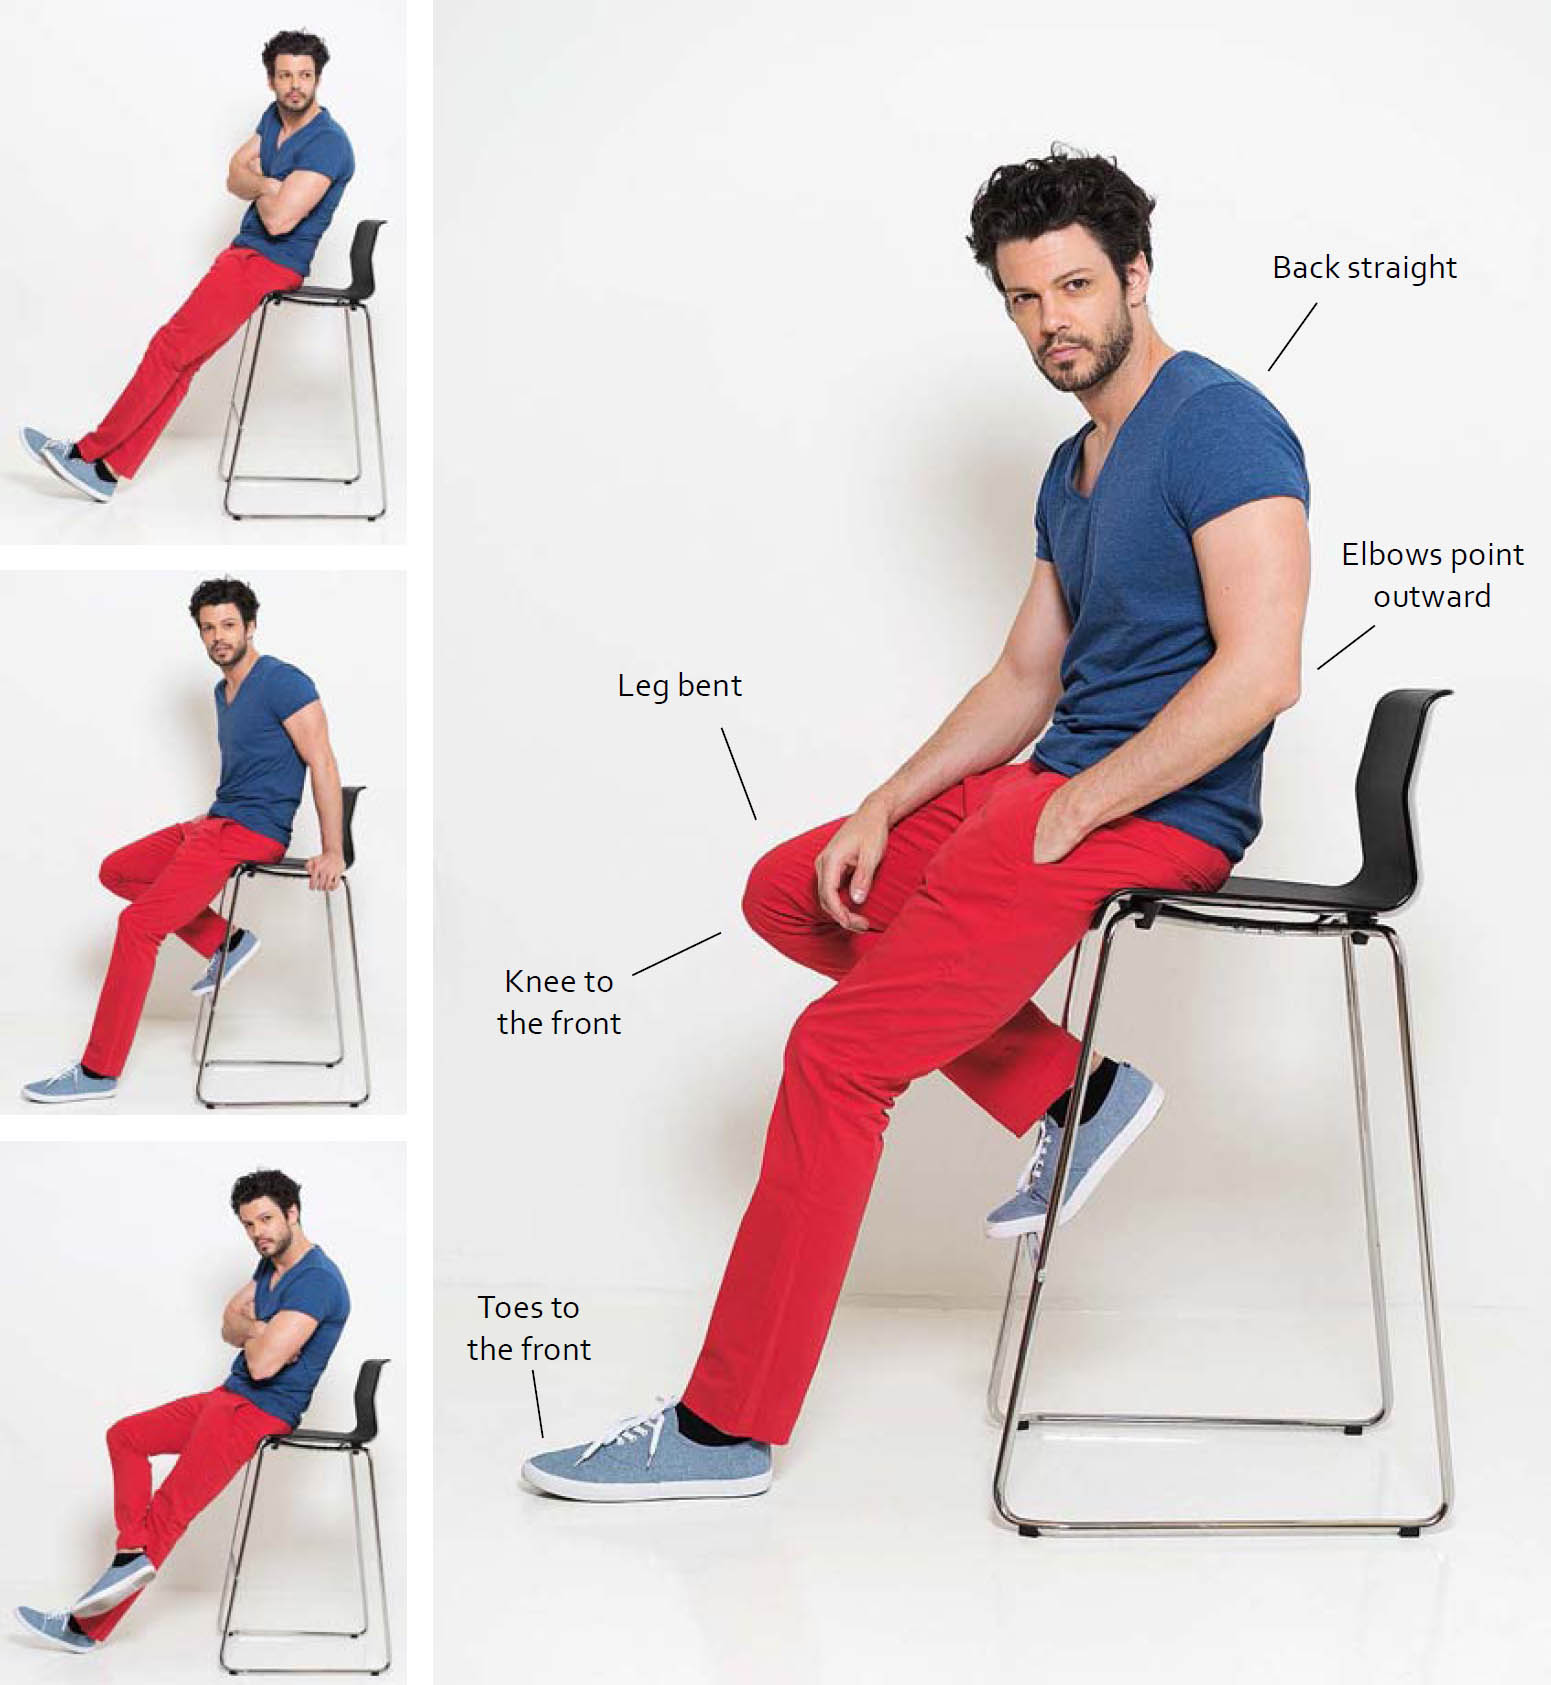 How to Do One-Legged Chair Pose (Eka Pada Utkatasana)